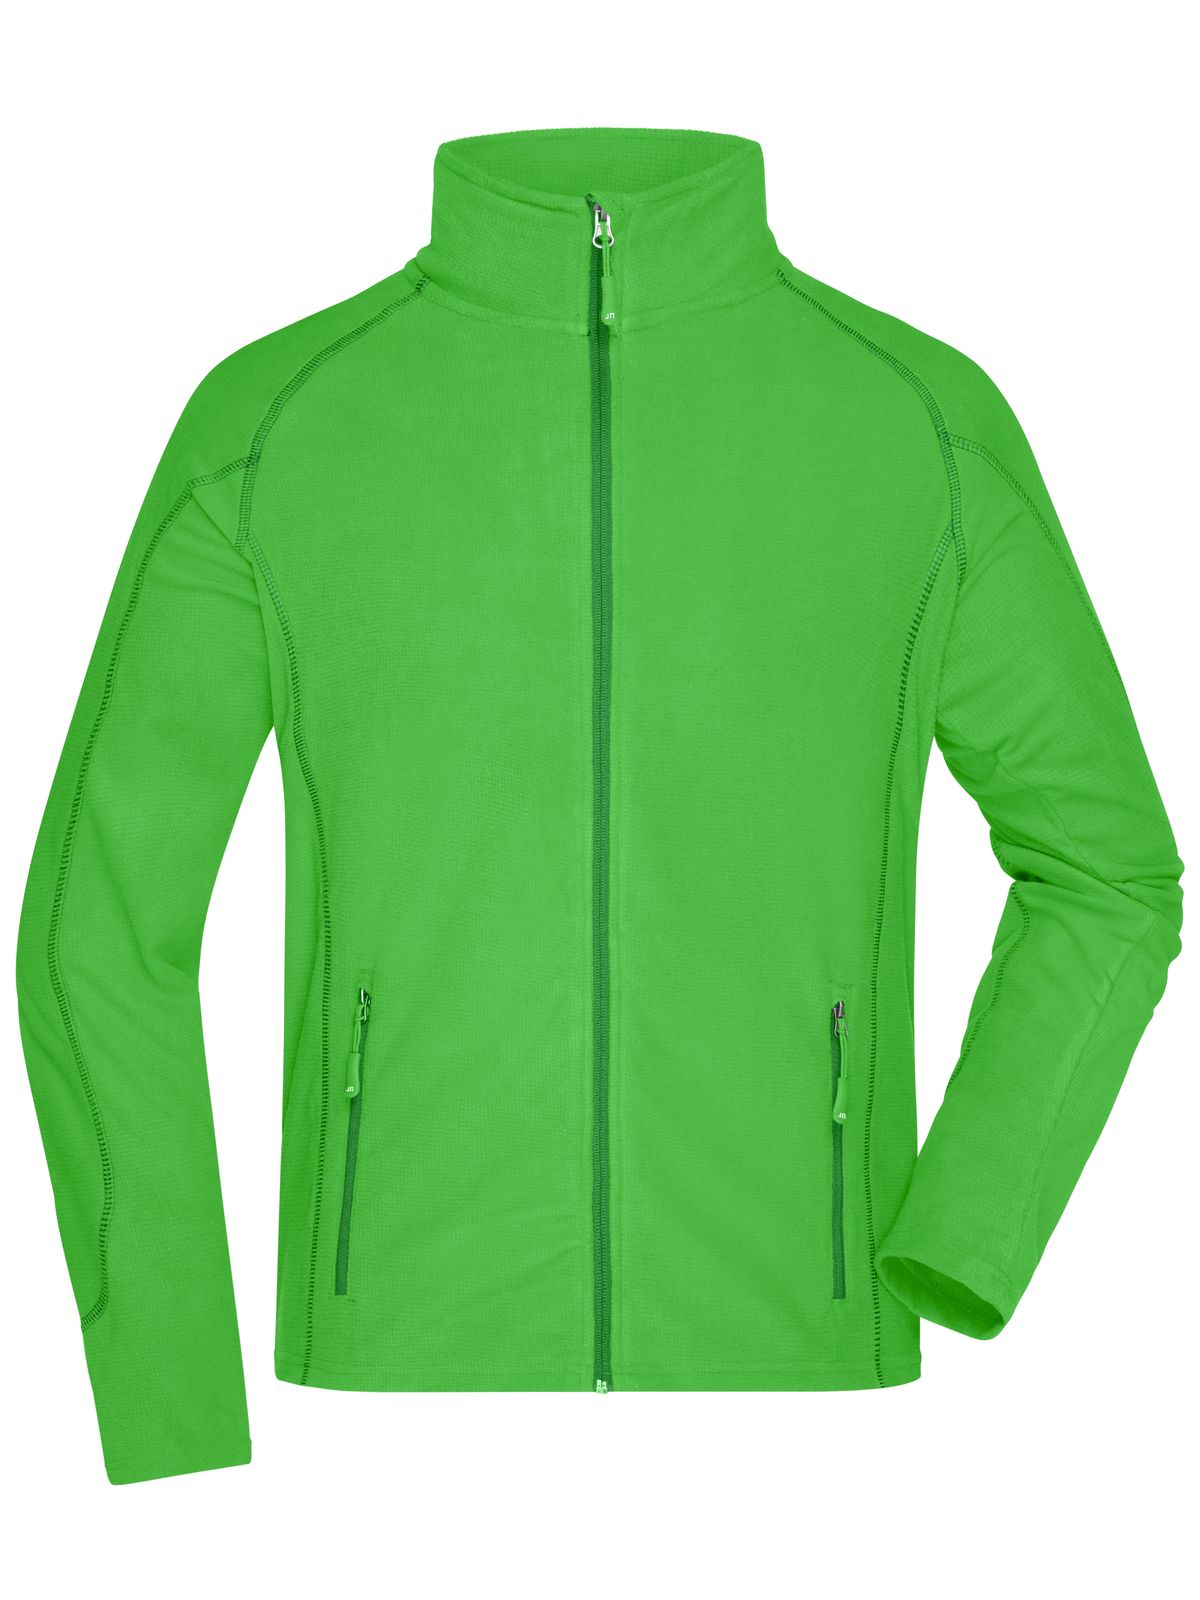 mens-structure-fleece-jacket-green-dark-green.webp